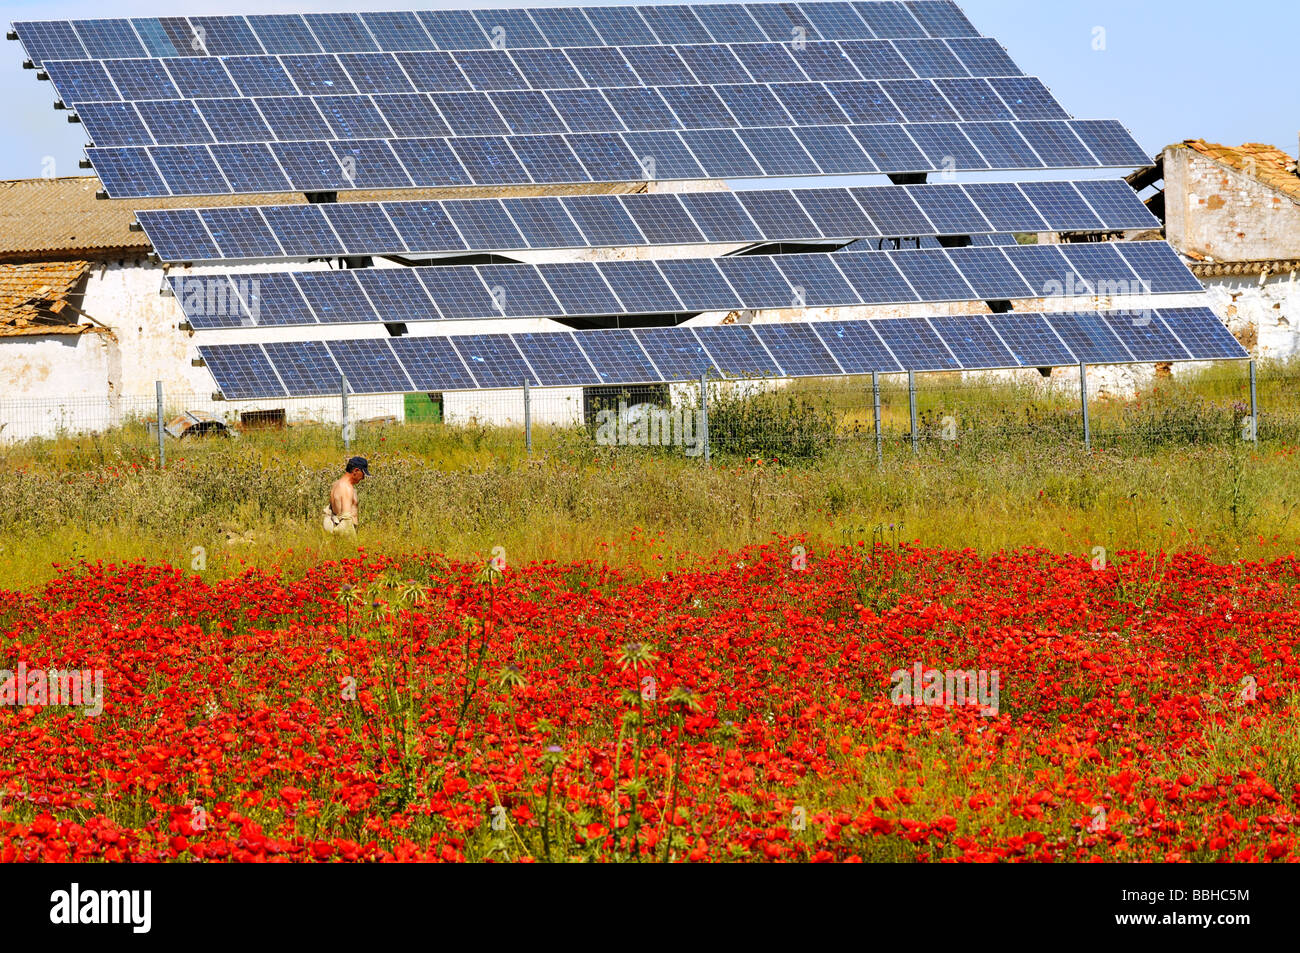 Champ avec des coquelicots rouges et de matrices de panneaux solaires pour la production d'électricité près de Antequera Espagne Banque D'Images